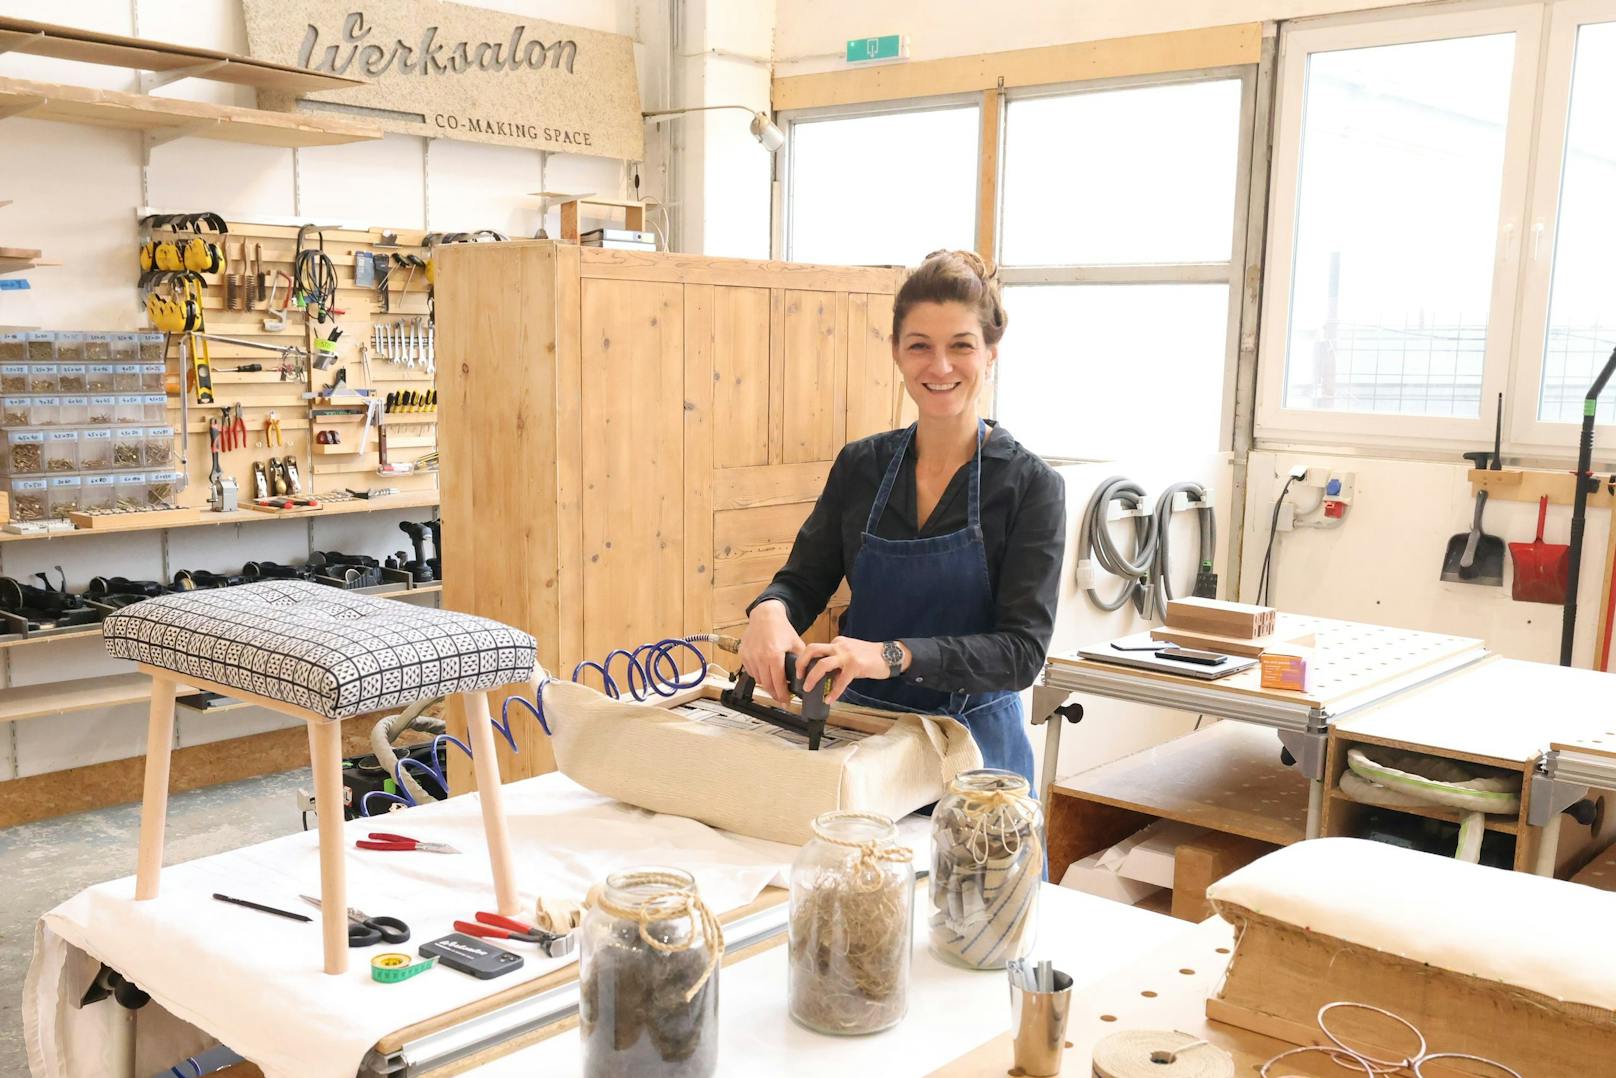 Gemeinsam mit ihrem Partner gründete Antoinette Rhomberg (42) vor knapp zehn Jahren den "Werksalon". Hobbytüftler und ausgebildete Tischler finden hier in Zeiten des Fachkräftemangels einen Platz, um ihre Leidenschaft auszuleben.